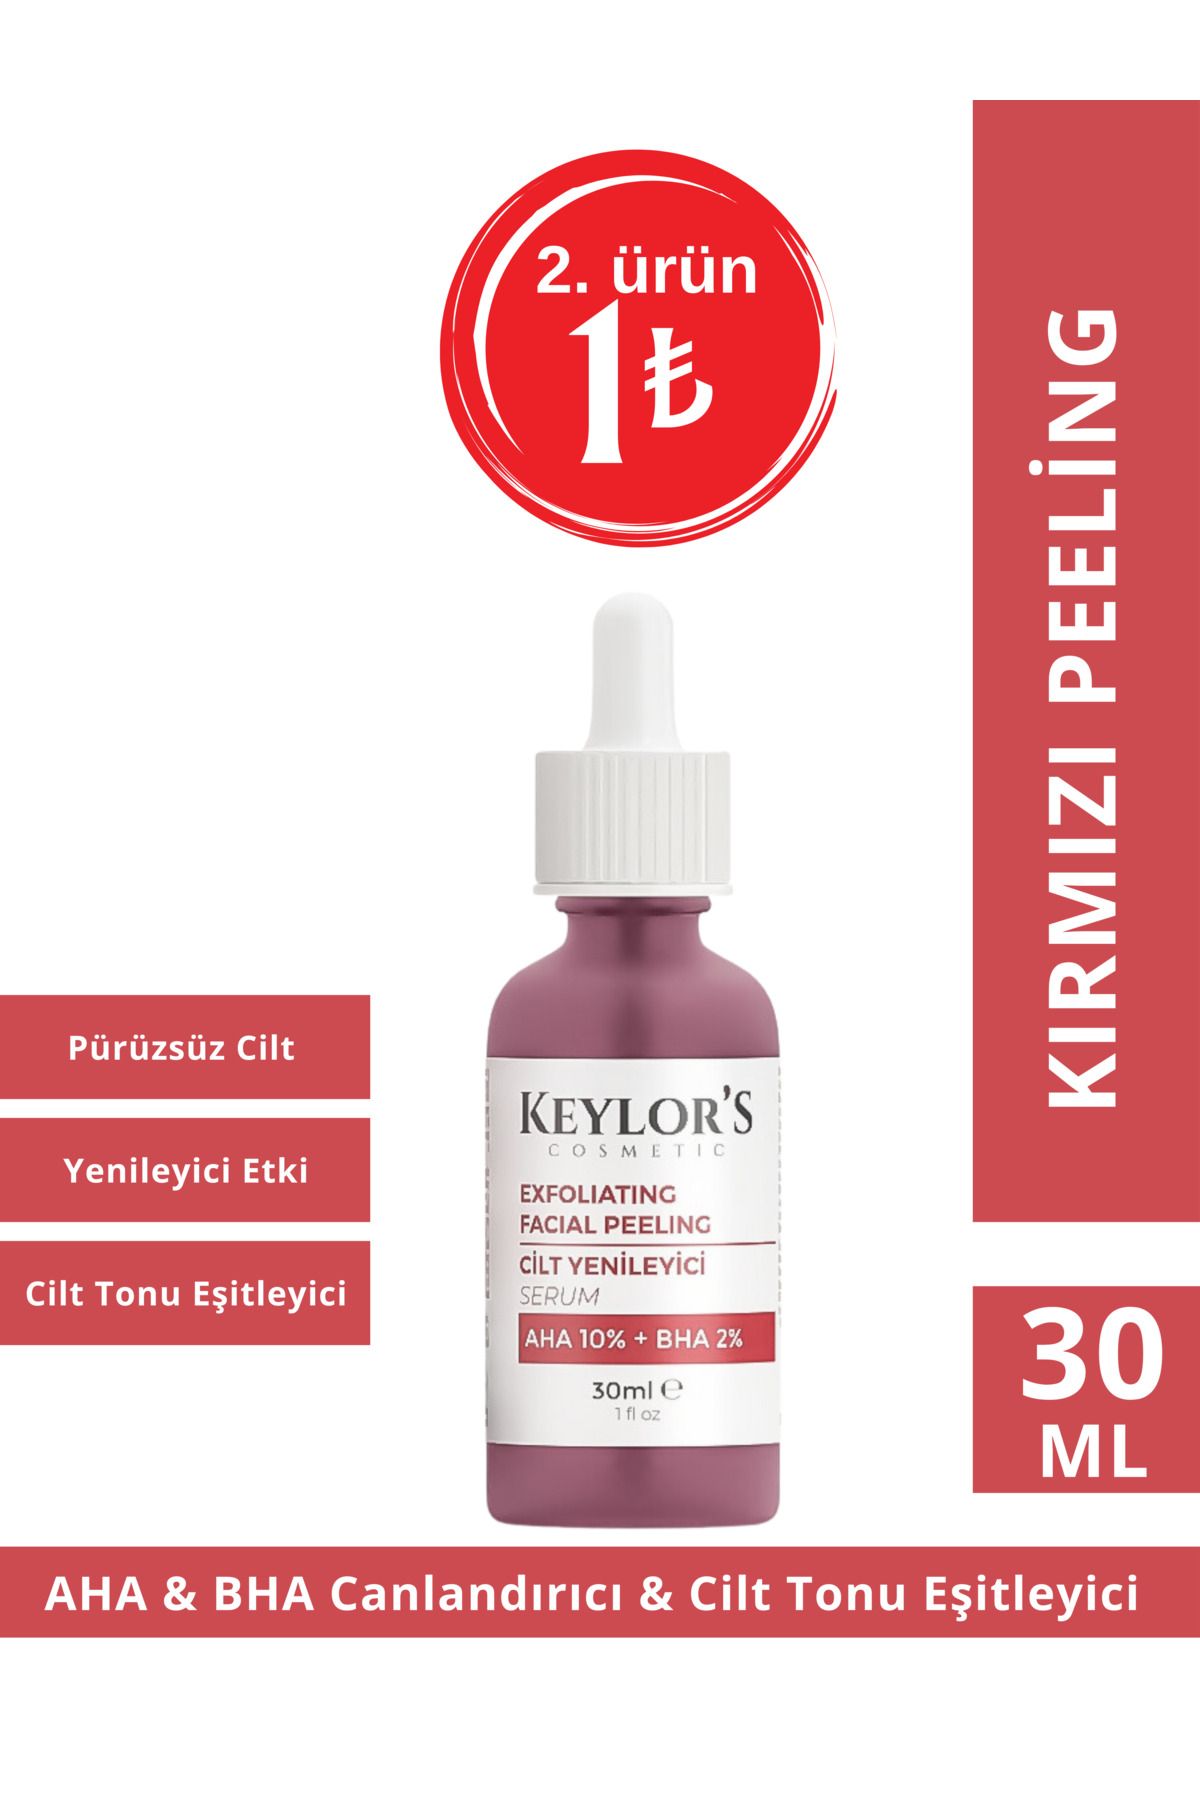 Keylor's Cosmetic Aha 10% & Bha 2% Kırmızı Peeling Serum 30 ml | Canlandırıcı Ve Cilt Tonu Eşitleyici